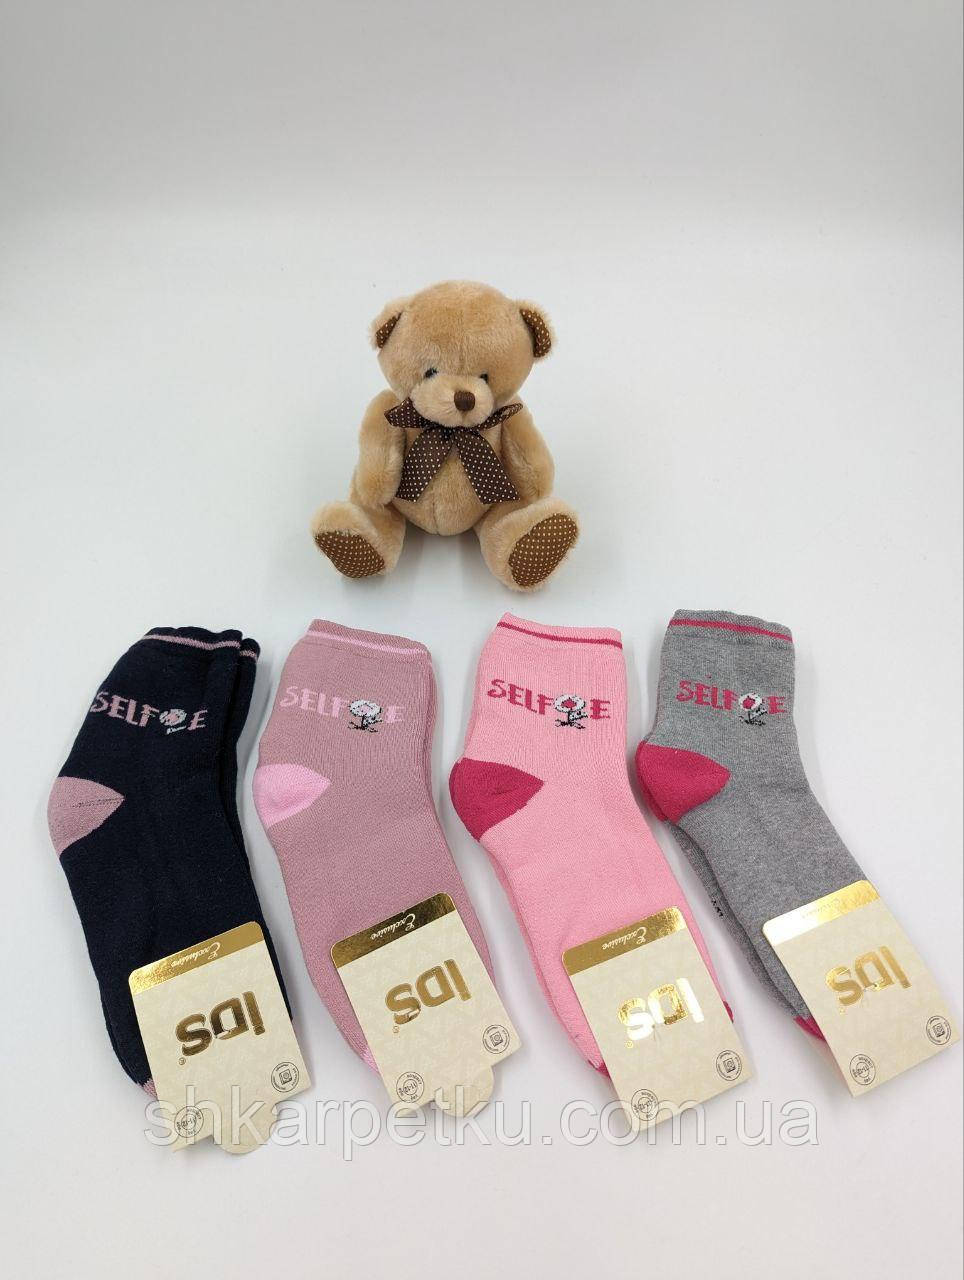 Дитячі шкарпетки IDS зимові махрові для дівчаток SELFE  12 пар/уп мікс кольорів